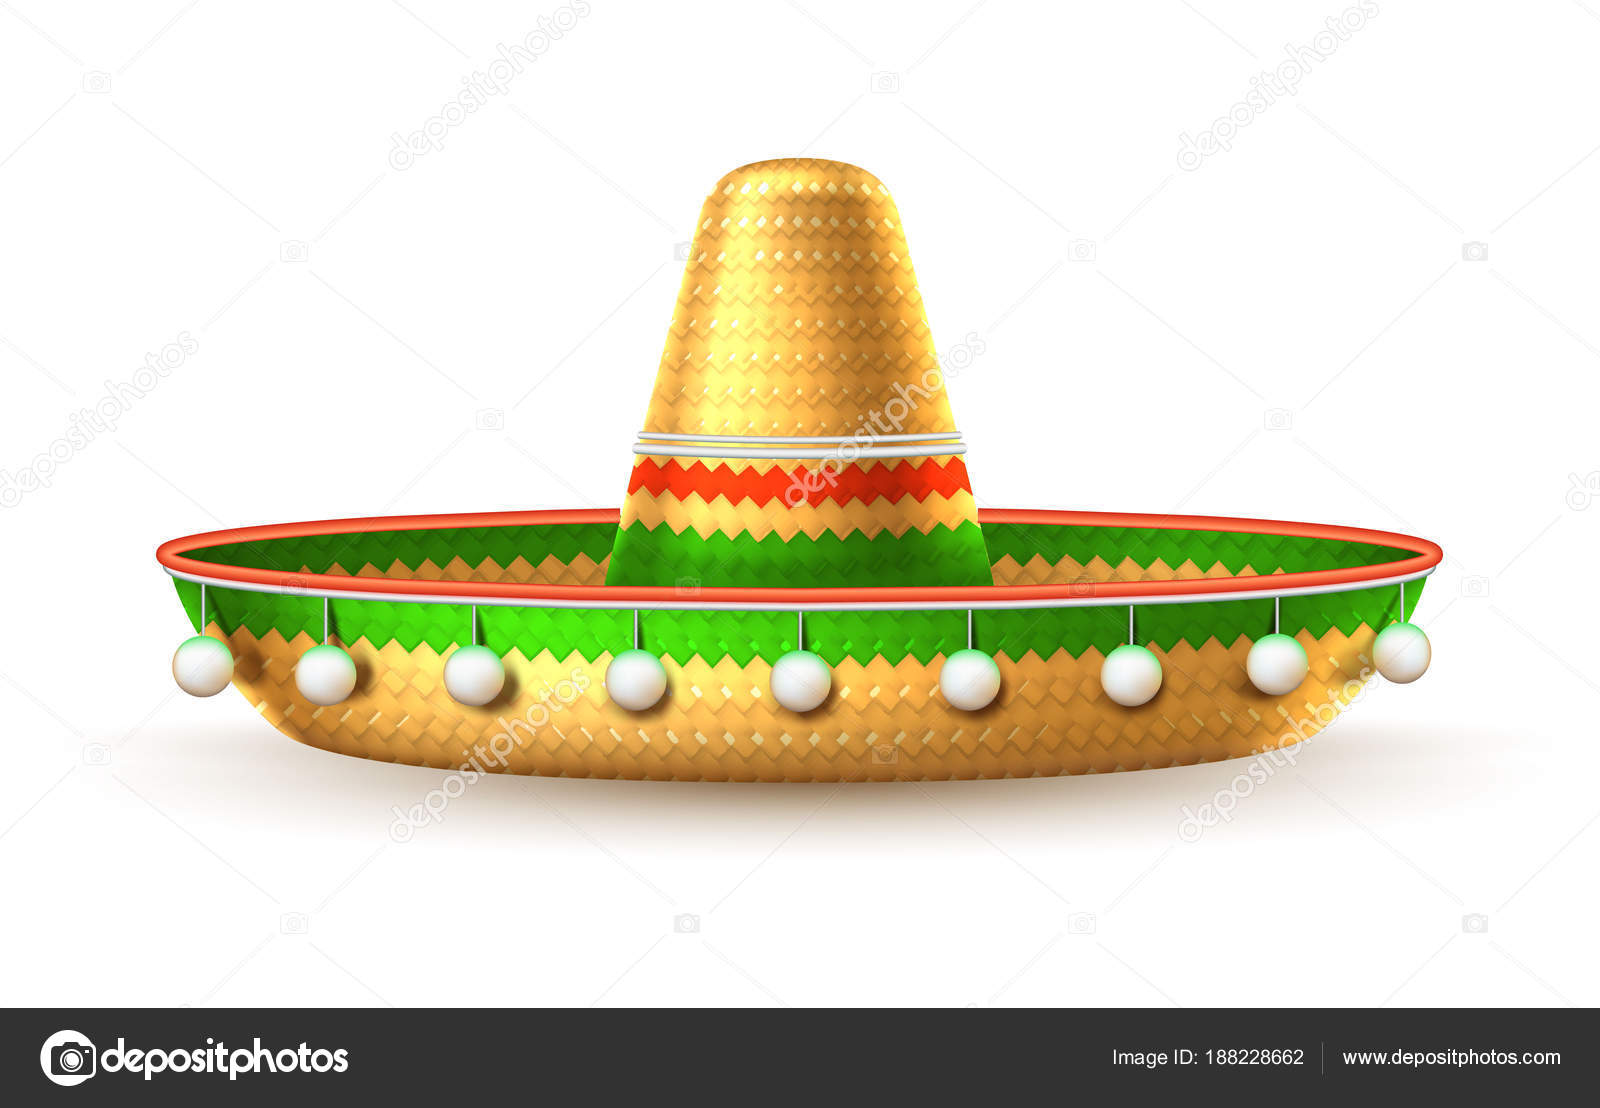 Mexican Sombrero Hat Straw Sombrero Hat for Cinco De Mayo Party